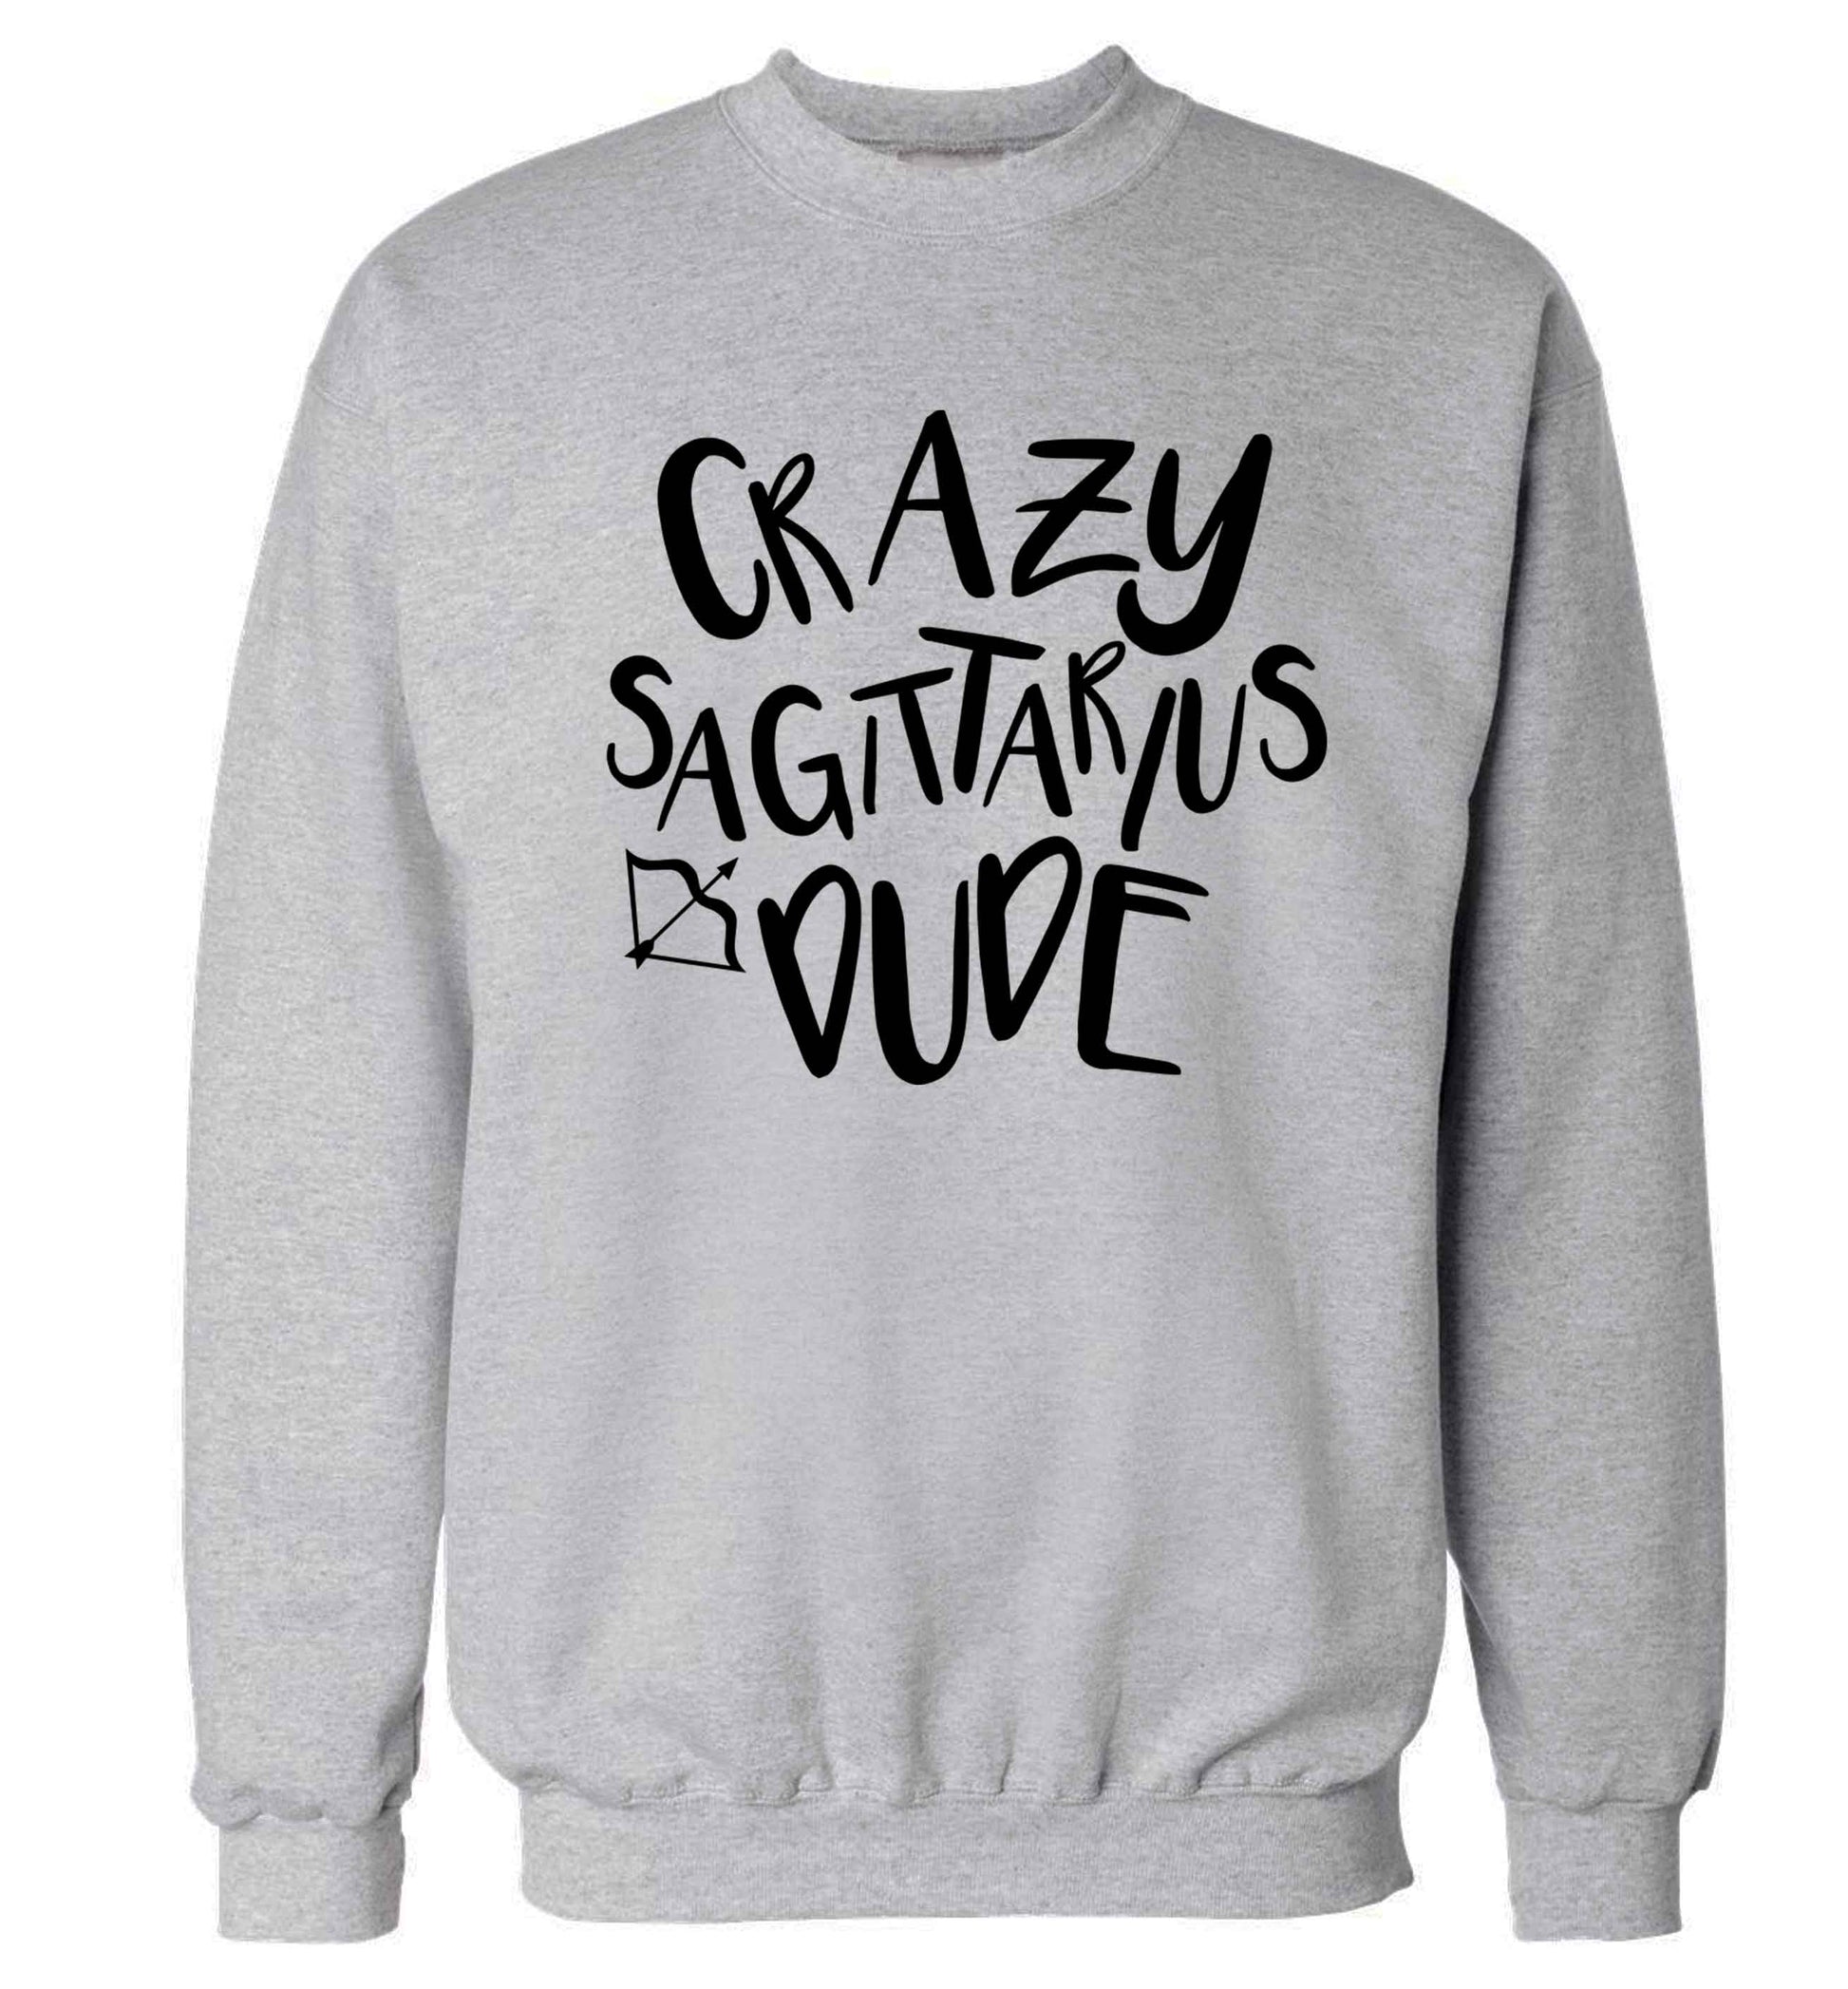 Crazy sagittarius dude Adult's unisex grey Sweater 2XL